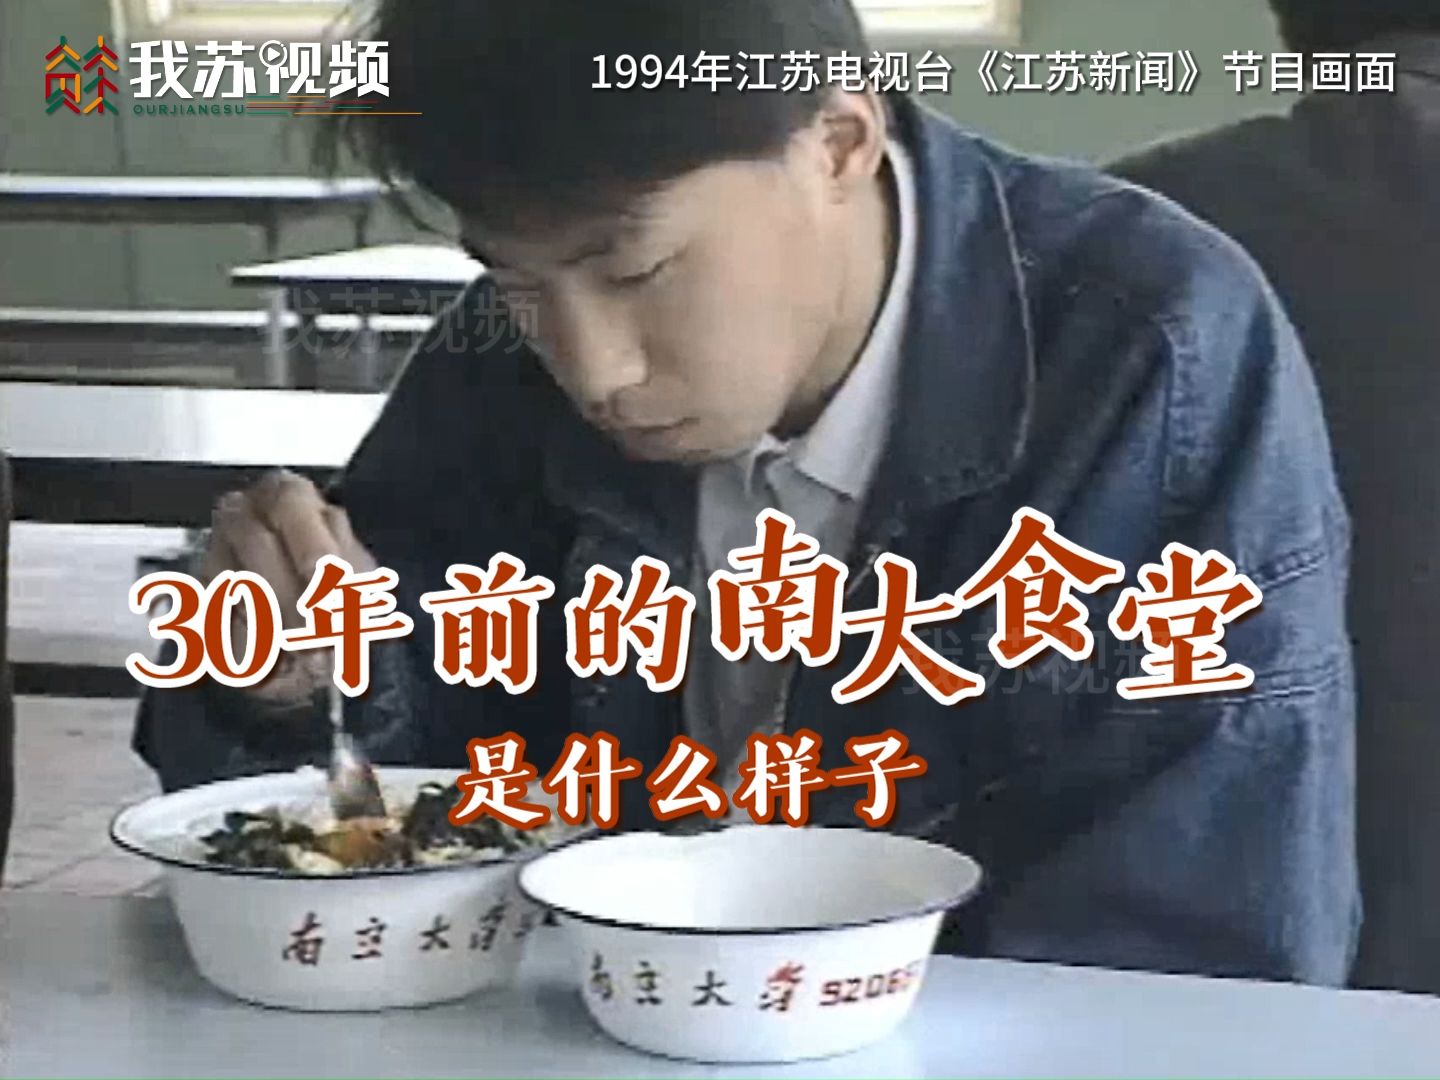 30年前的高校食堂是什么样子？一段1994年南京大学食堂的珍贵影像资料，带你感受那段青春回忆……